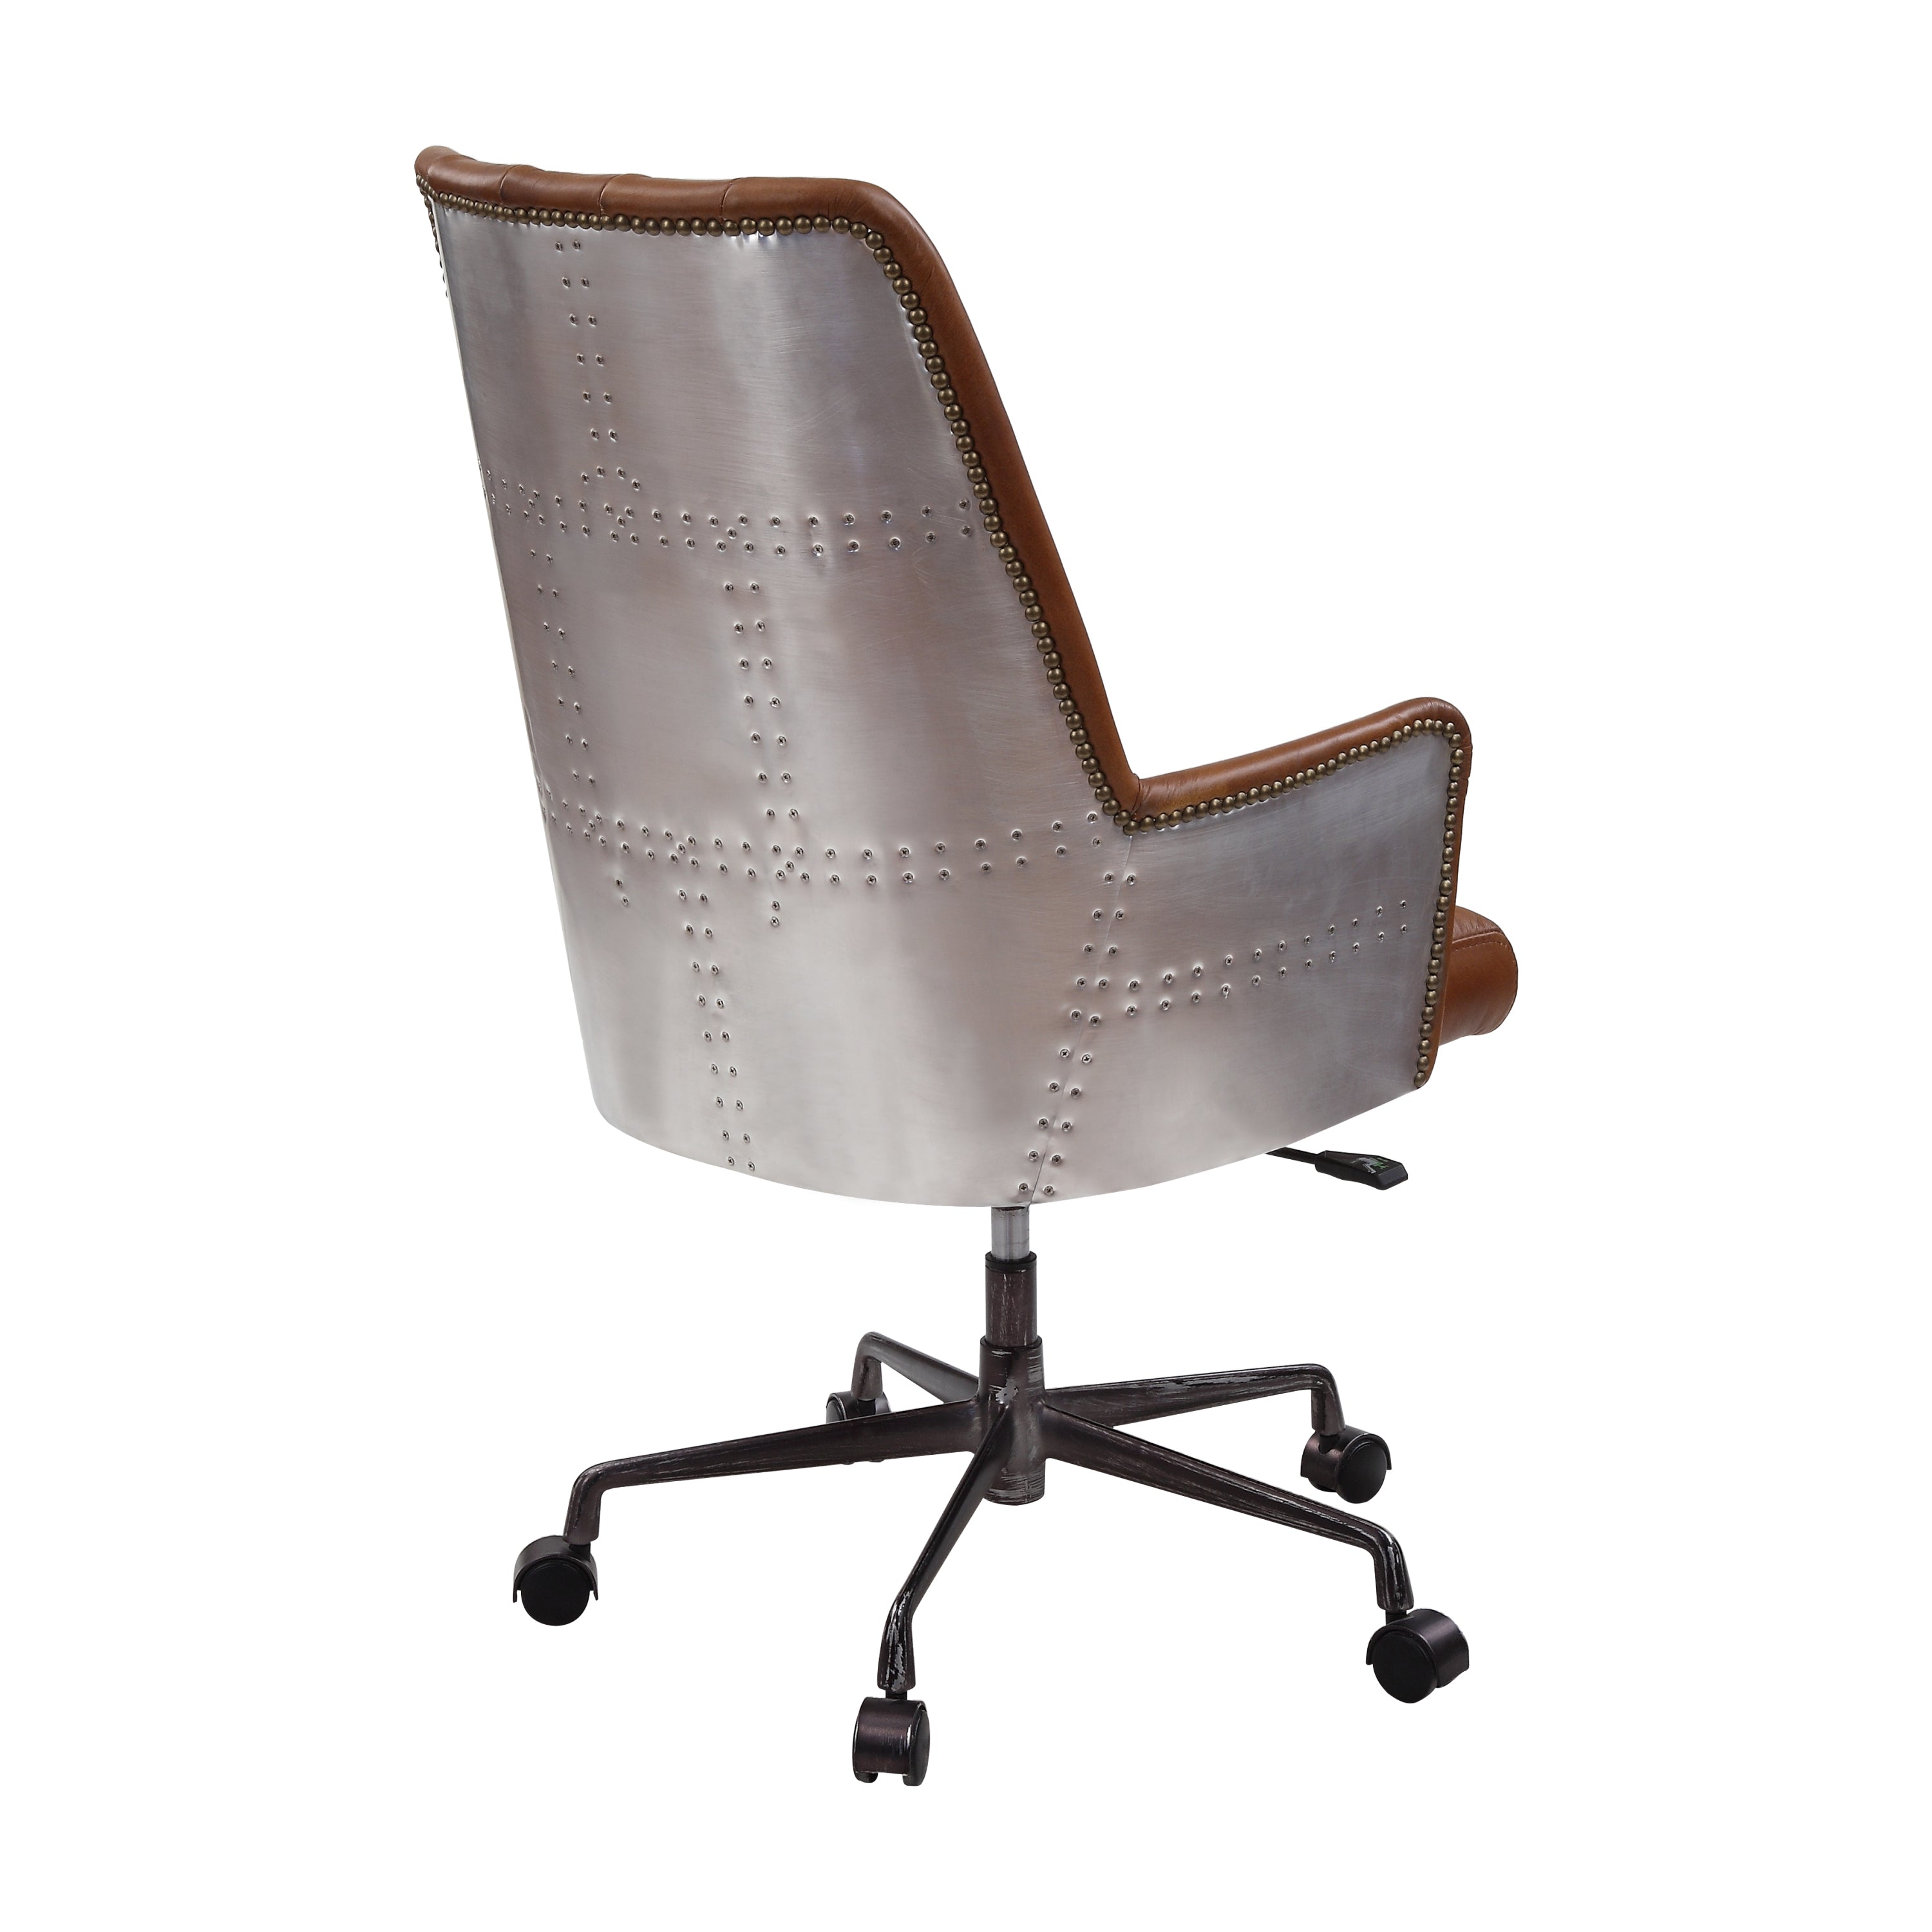 Salvol Office Chair, Sahara Leather & Aluminum - Brown